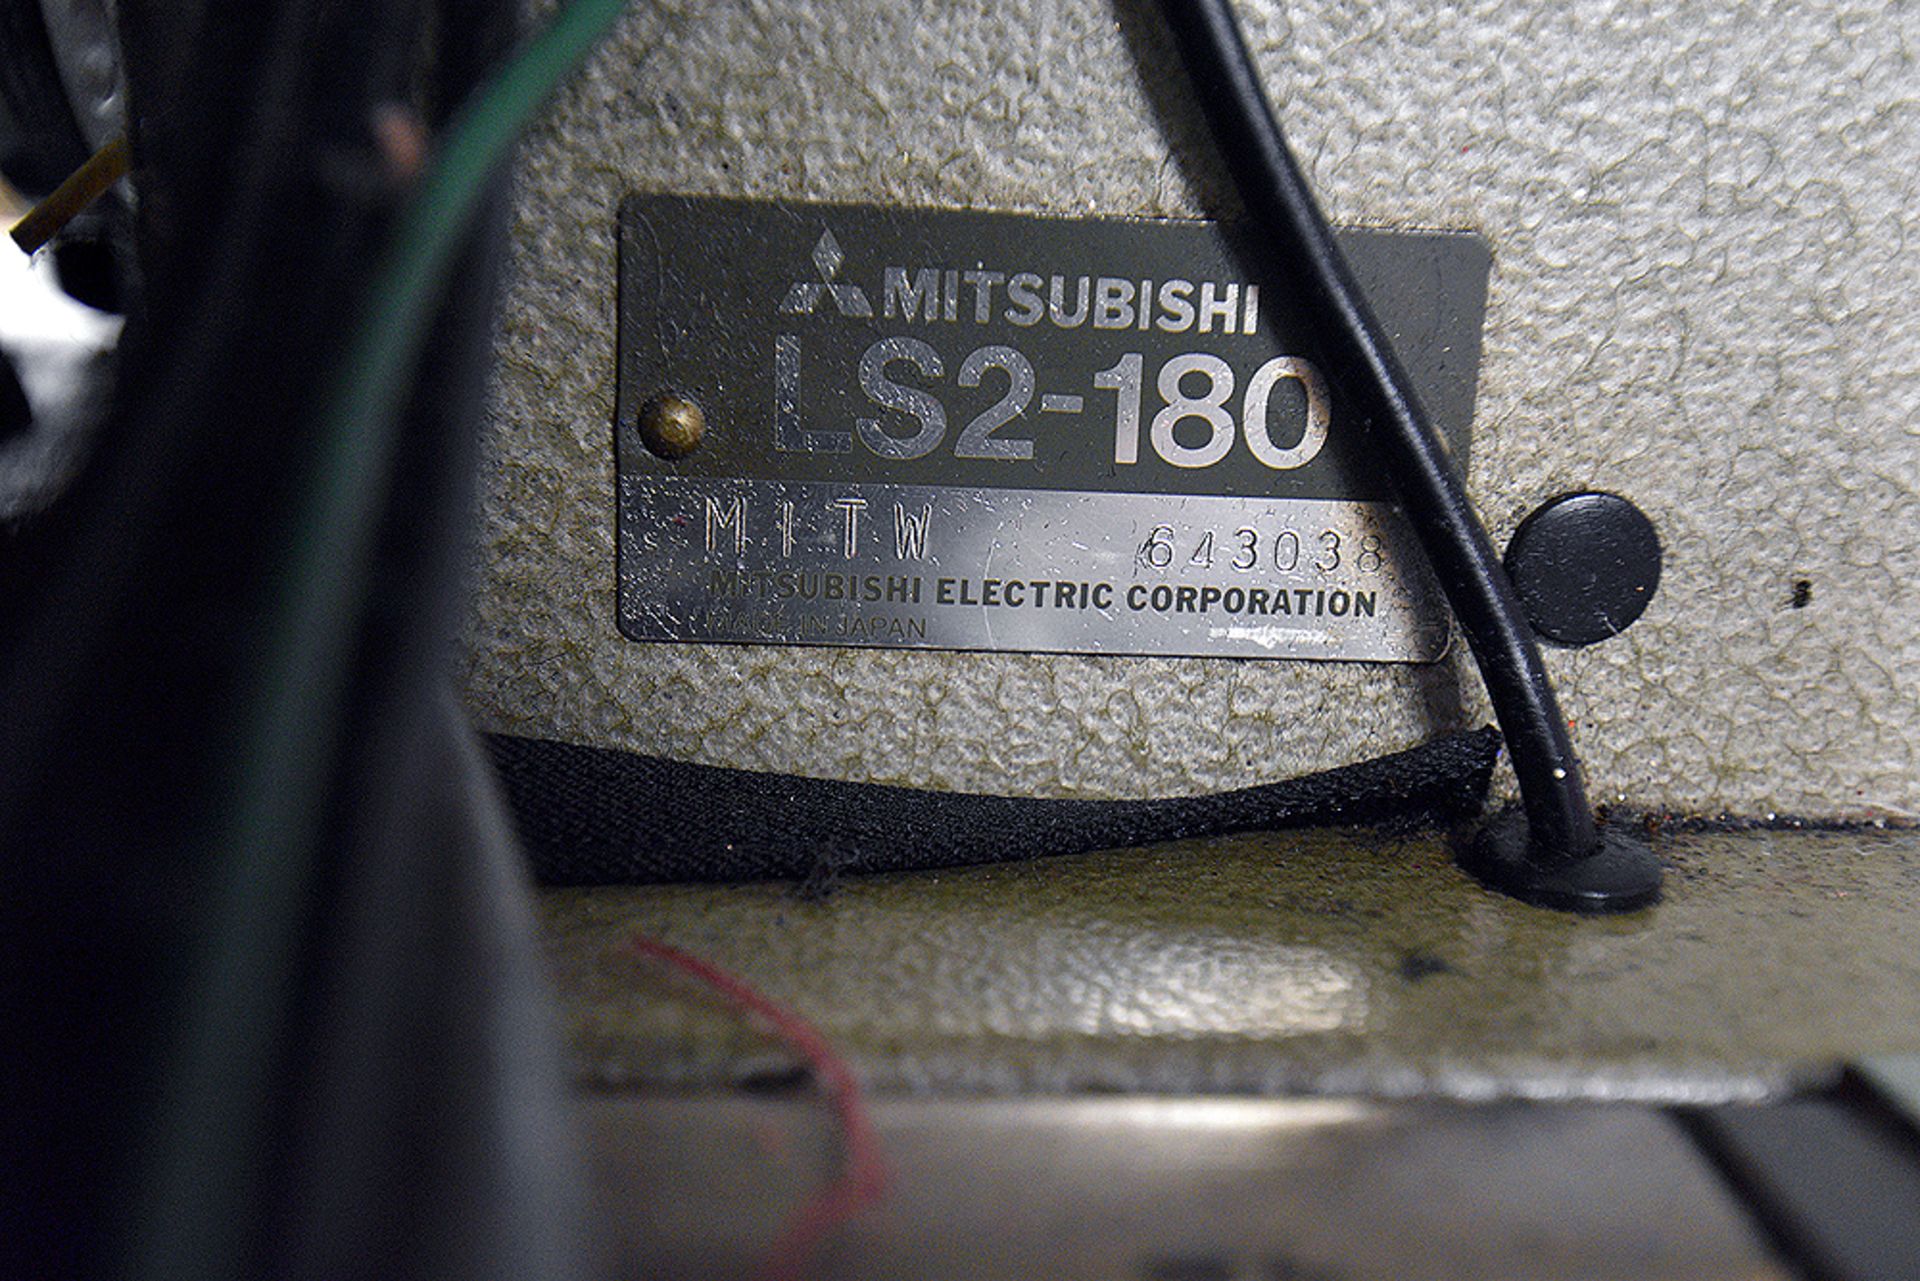 Mitsubishi LS2-180 - Image 3 of 7